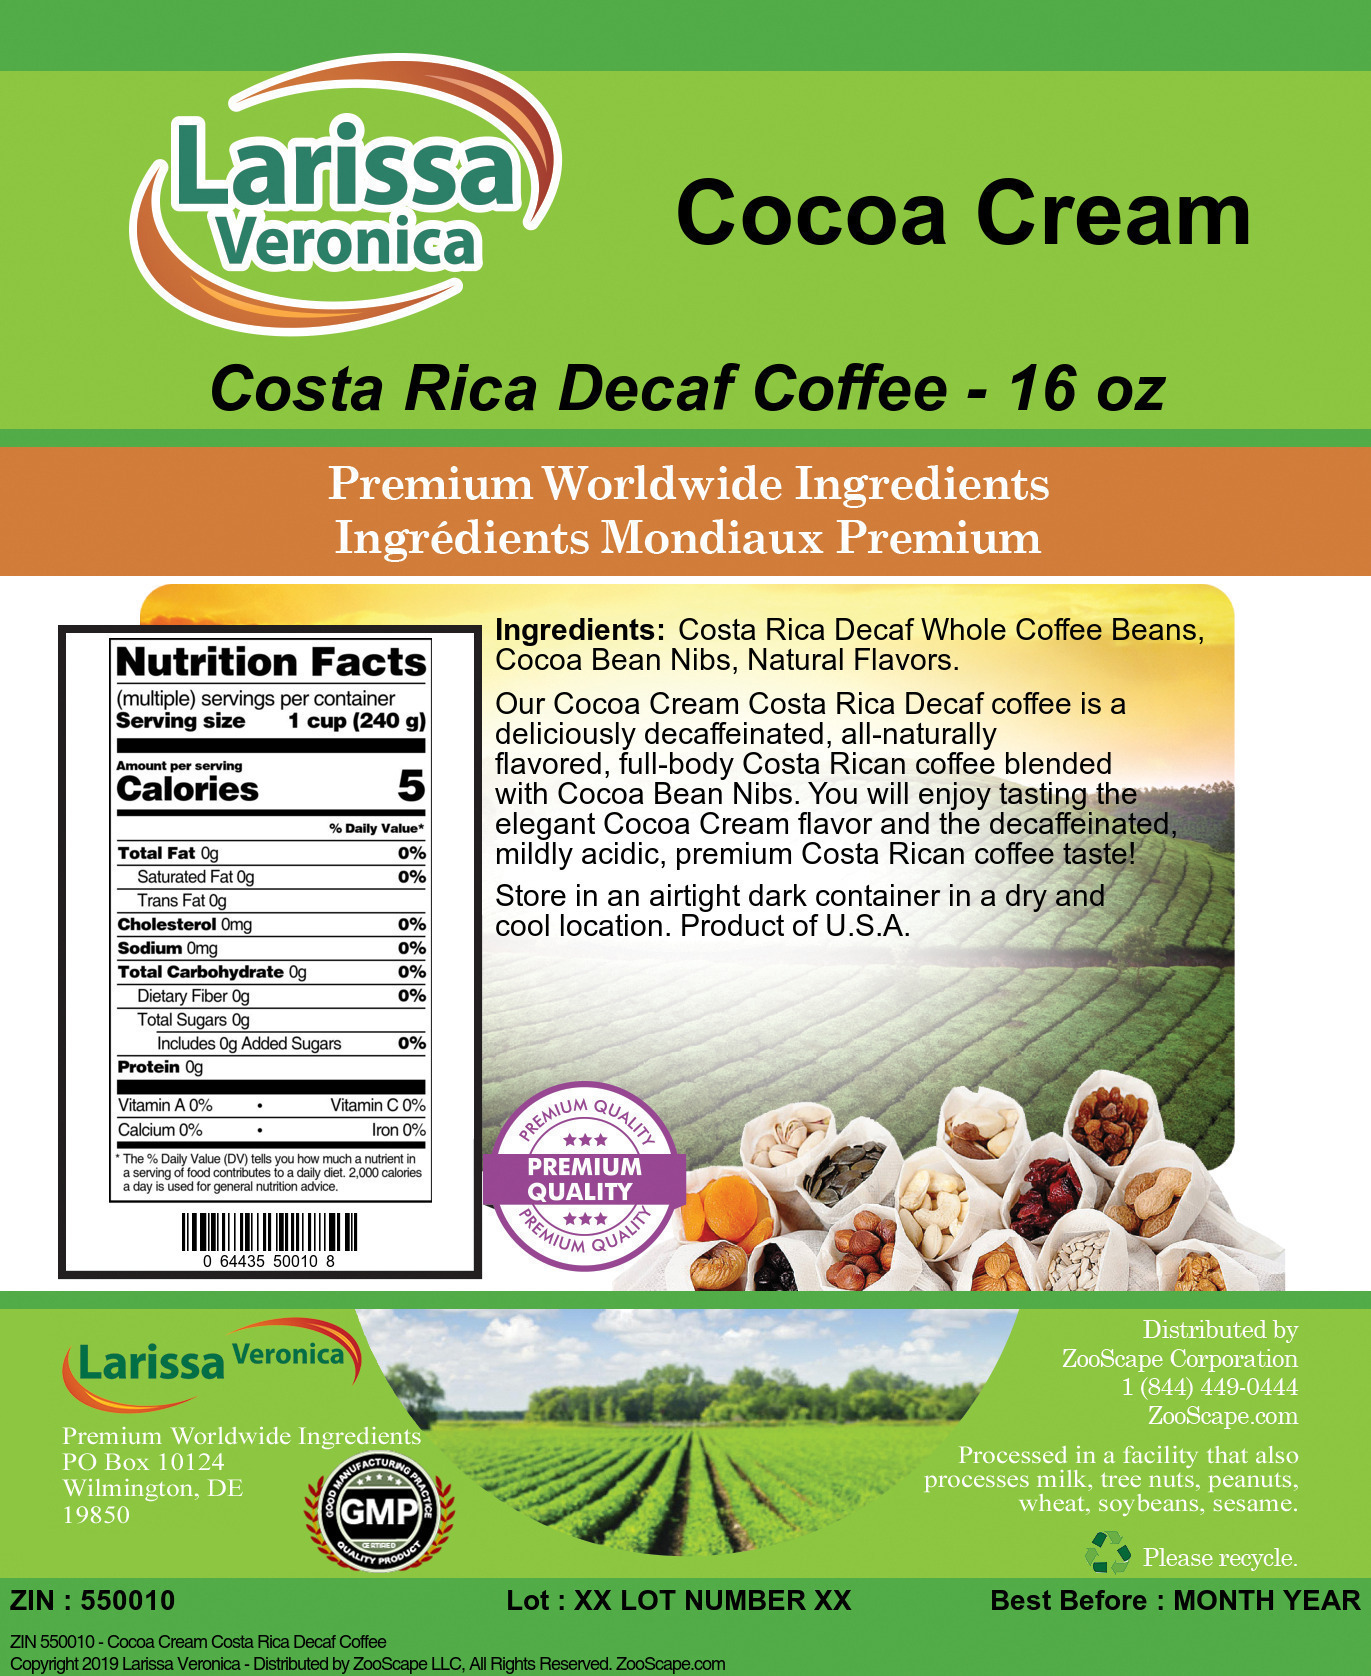 Cocoa Cream Costa Rica Decaf Coffee - Label